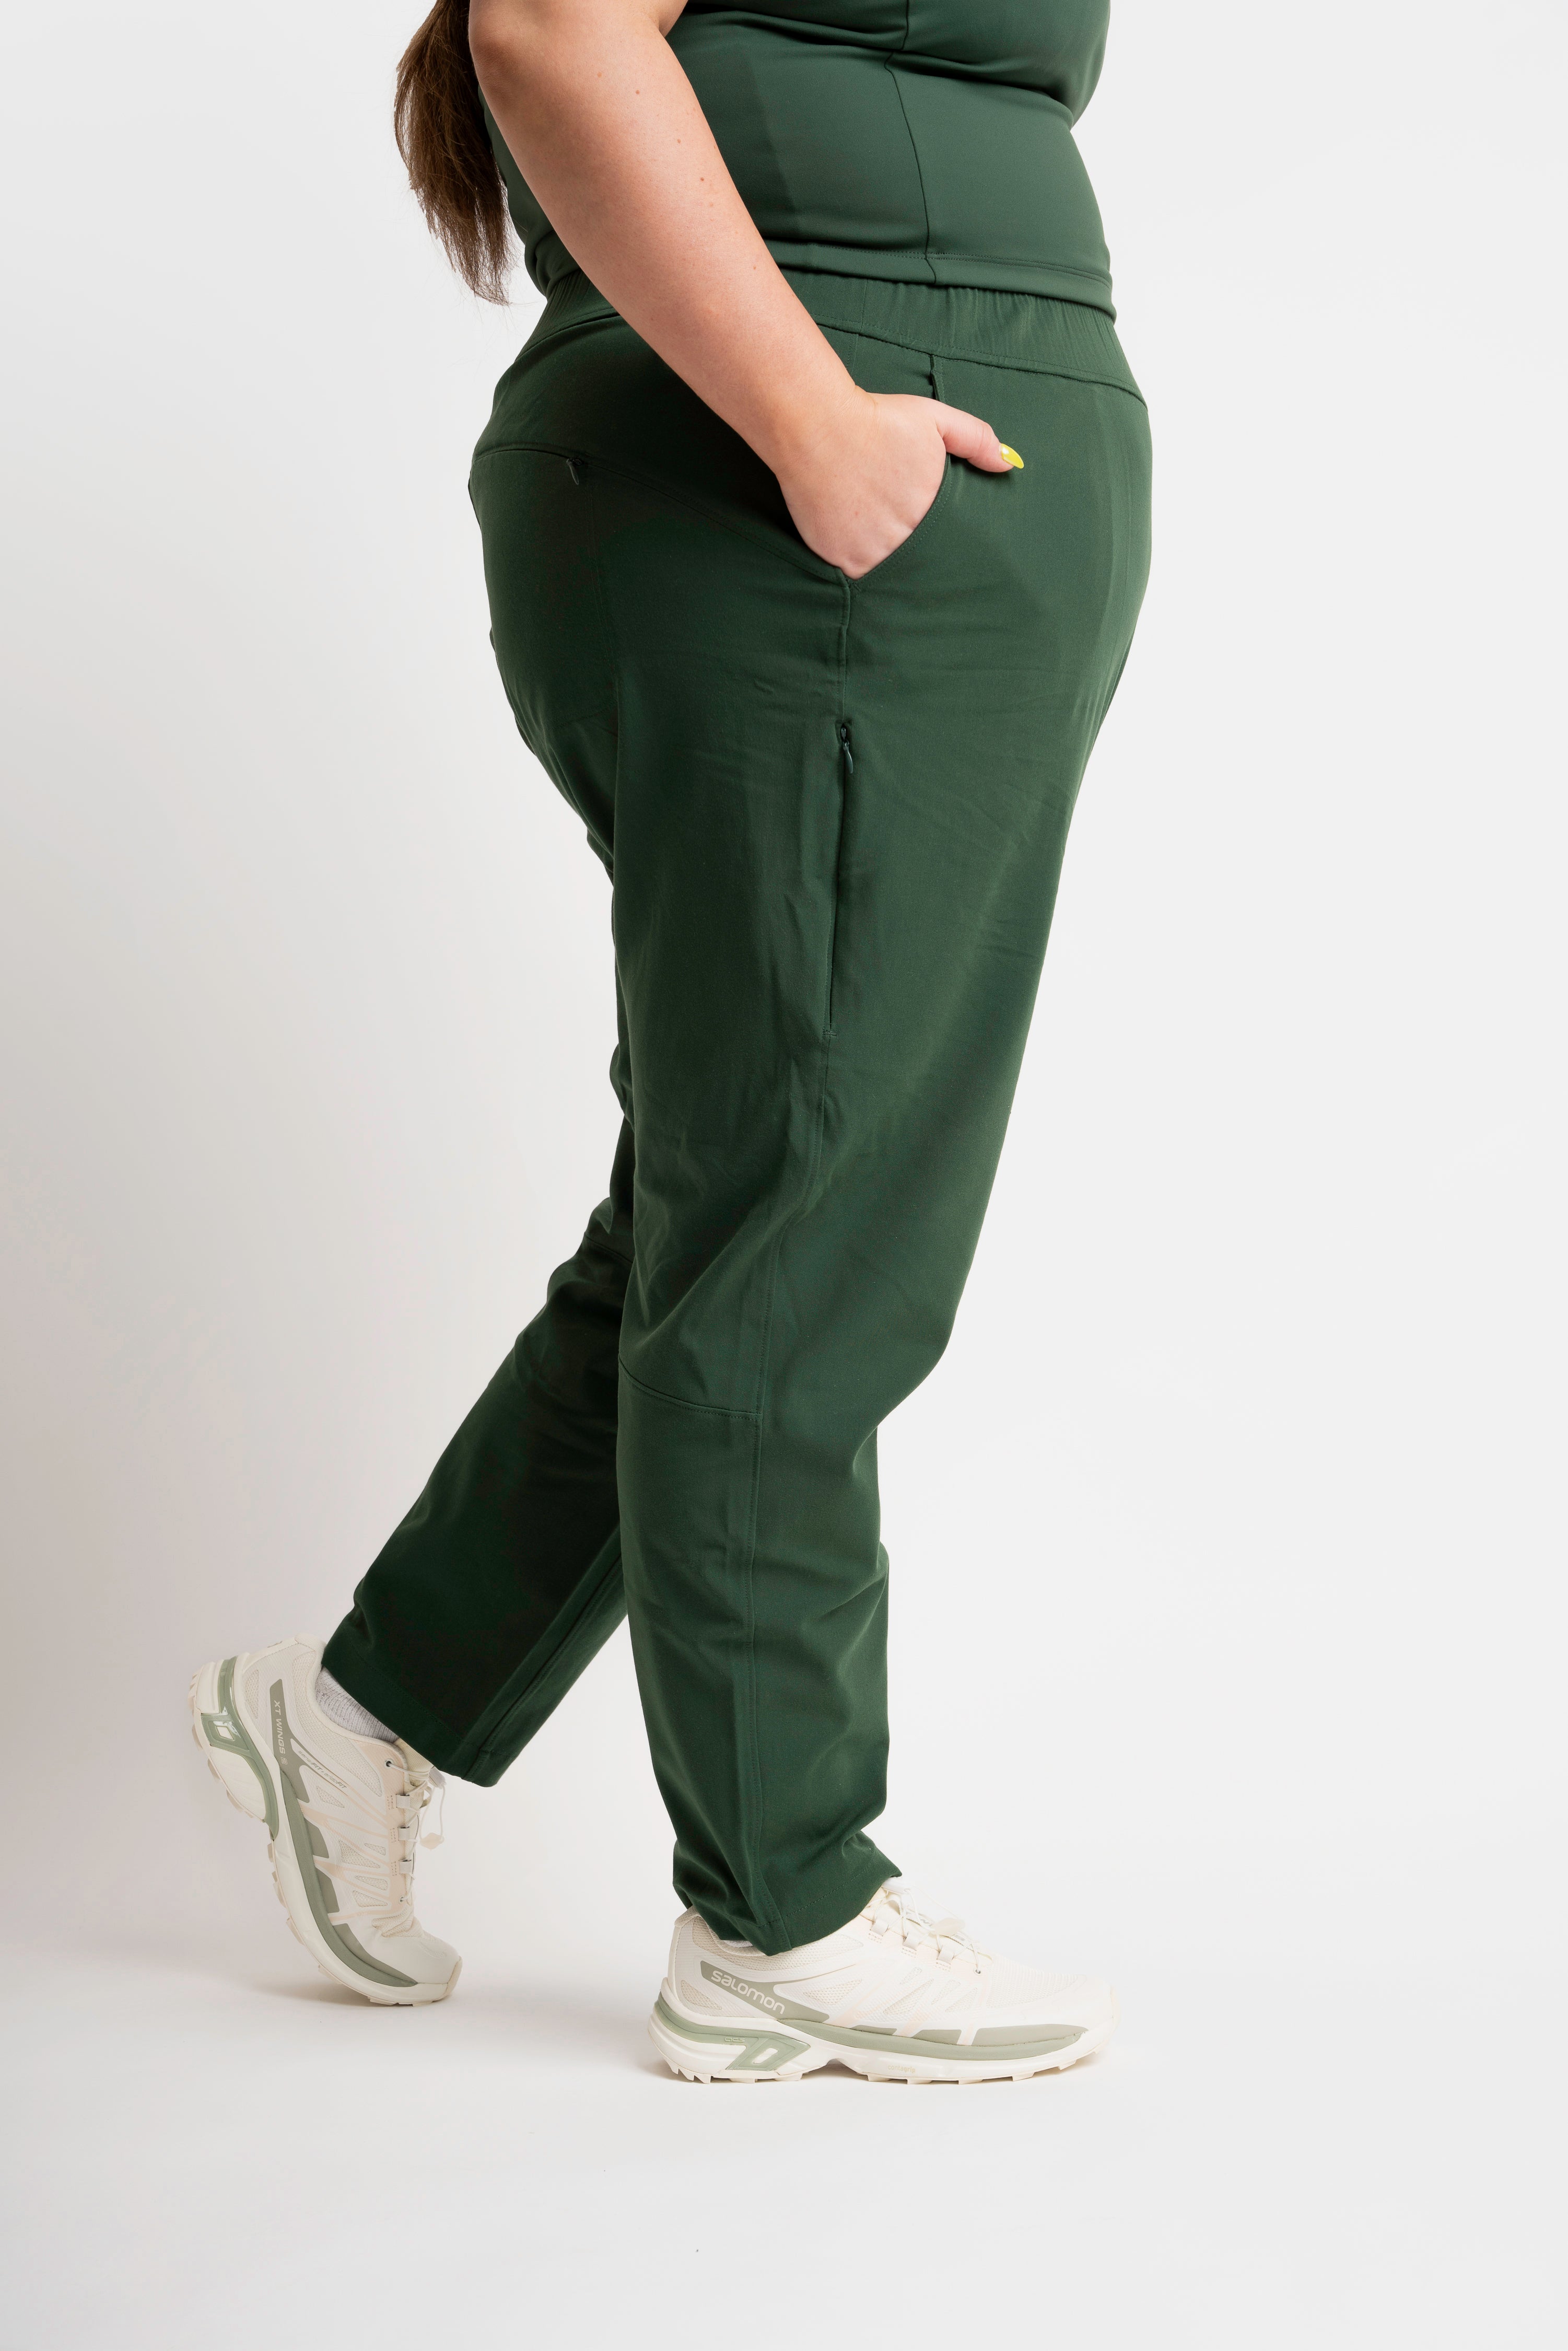 Women's Tall Wide Leg Pleated Dress Pants Midnight Green – American Tall